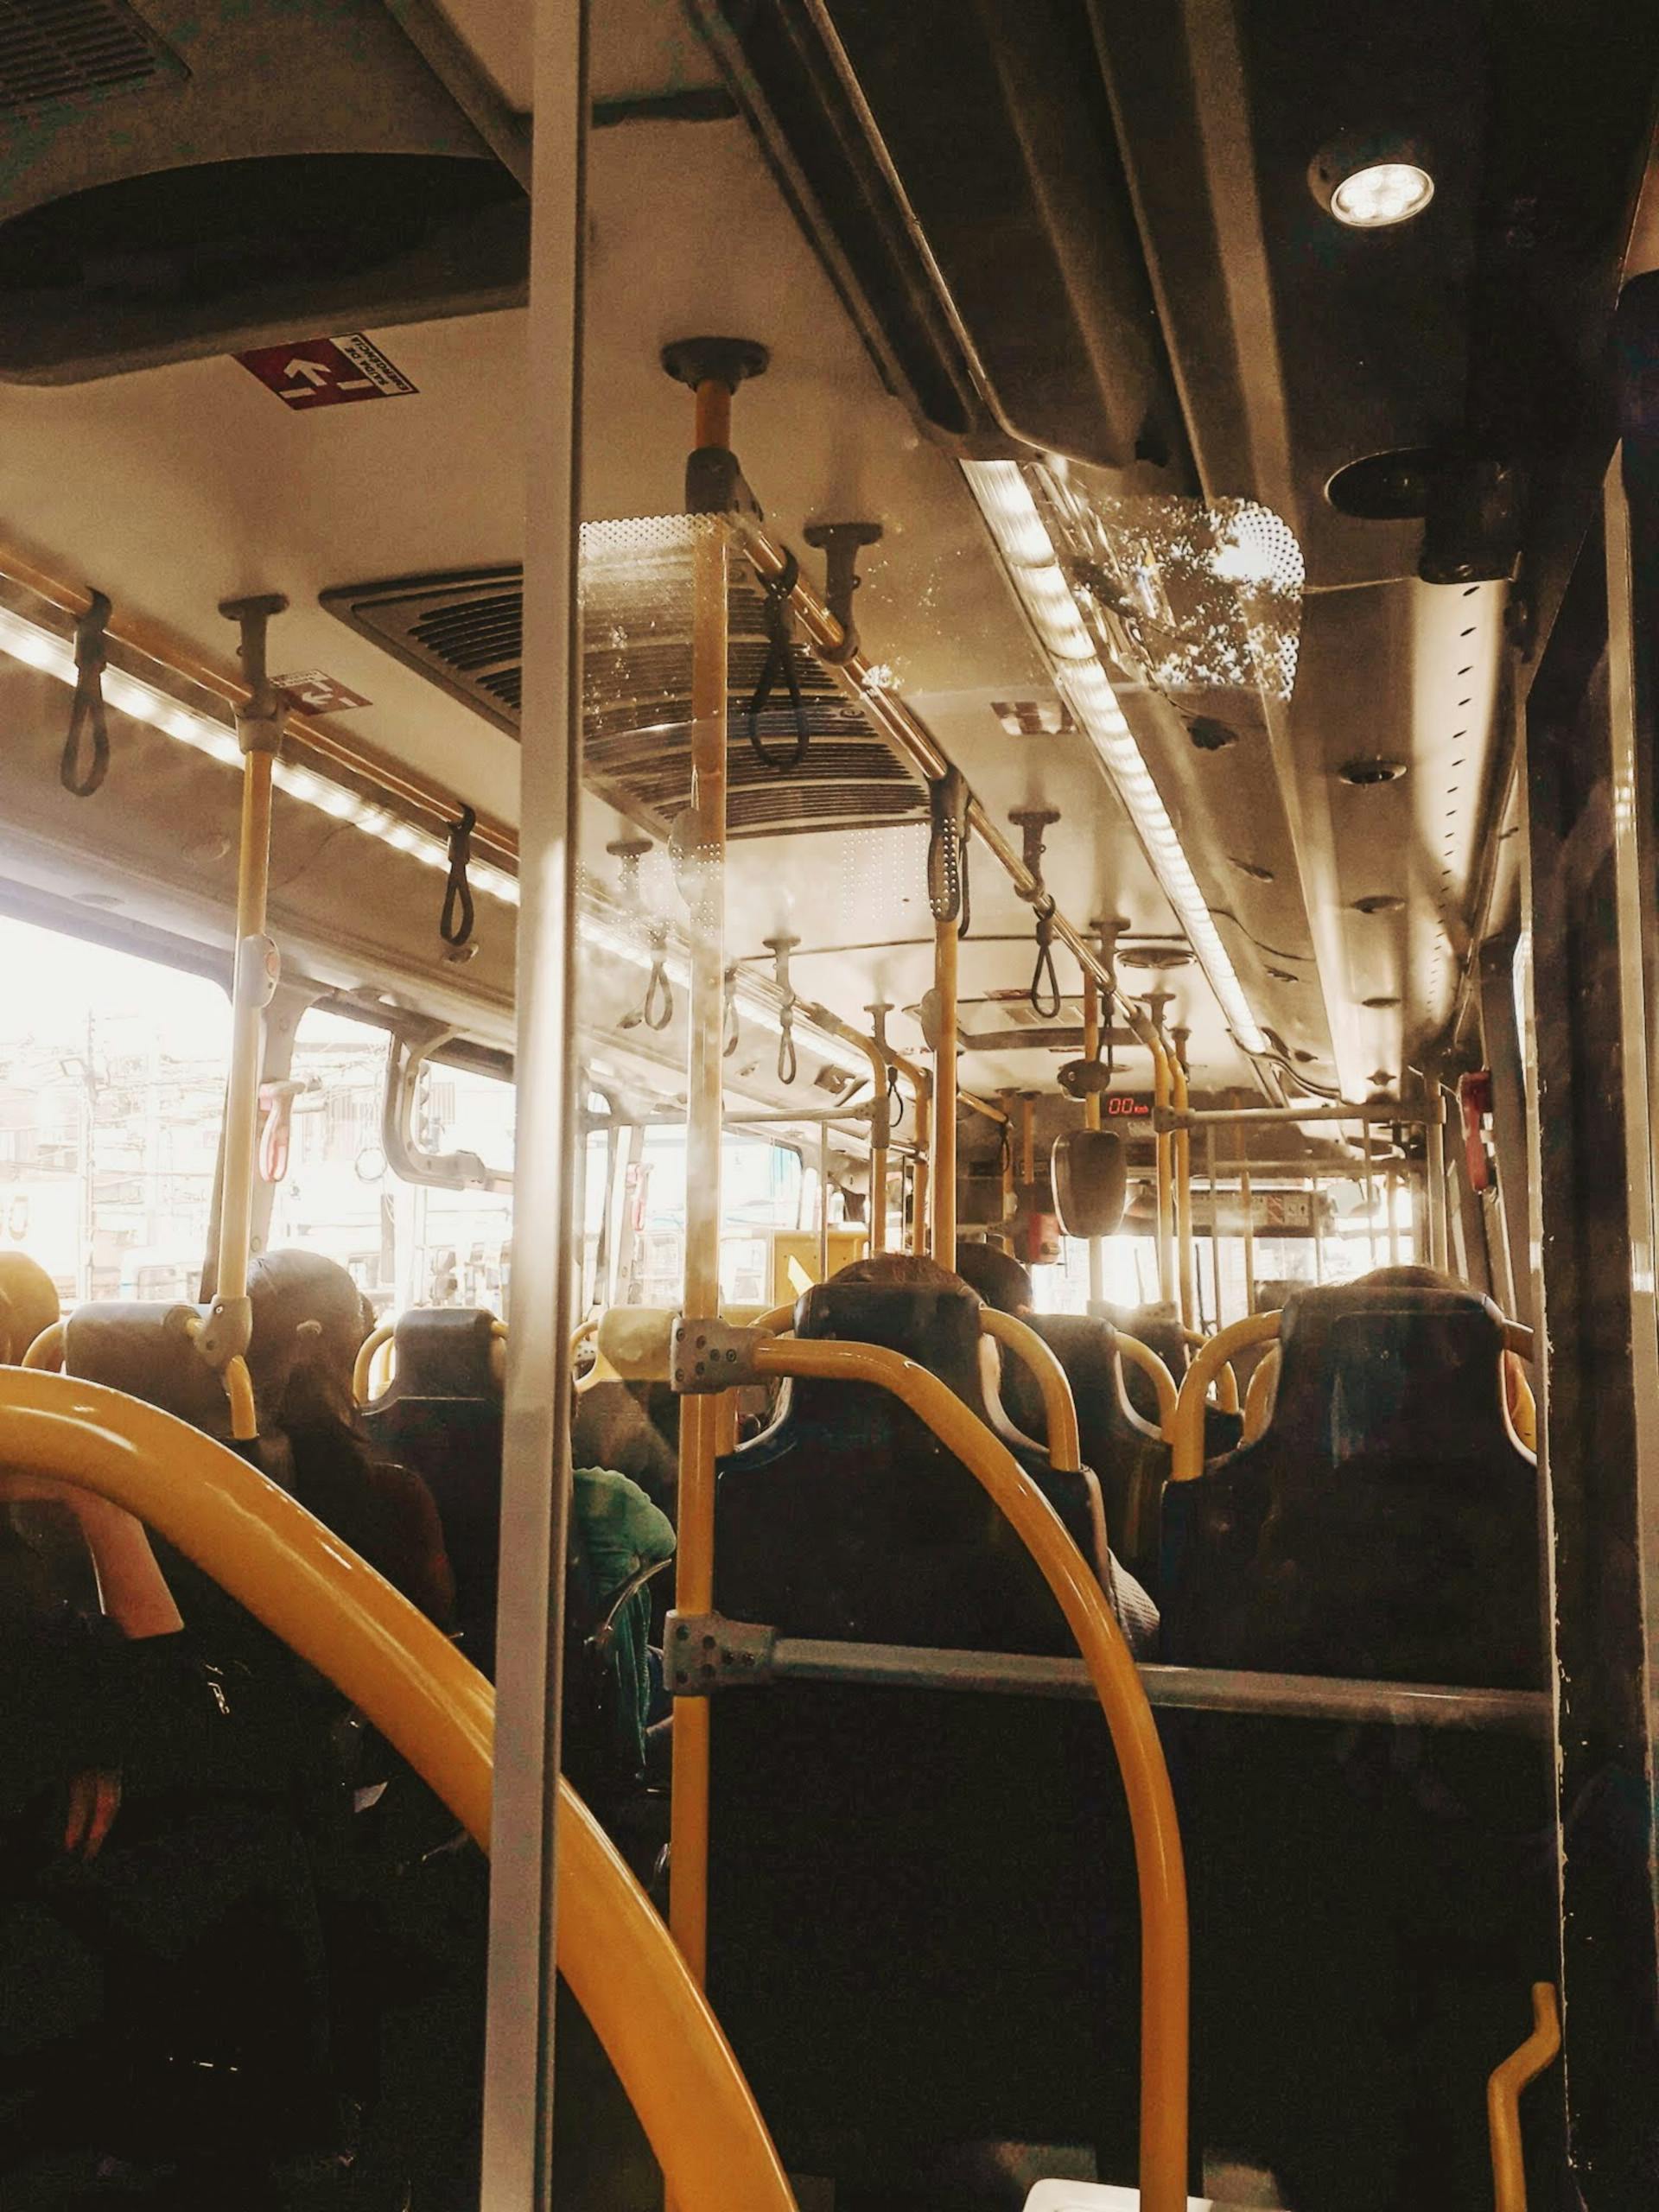 Des personnes à l'intérieur d'un bus | Source : Pexels